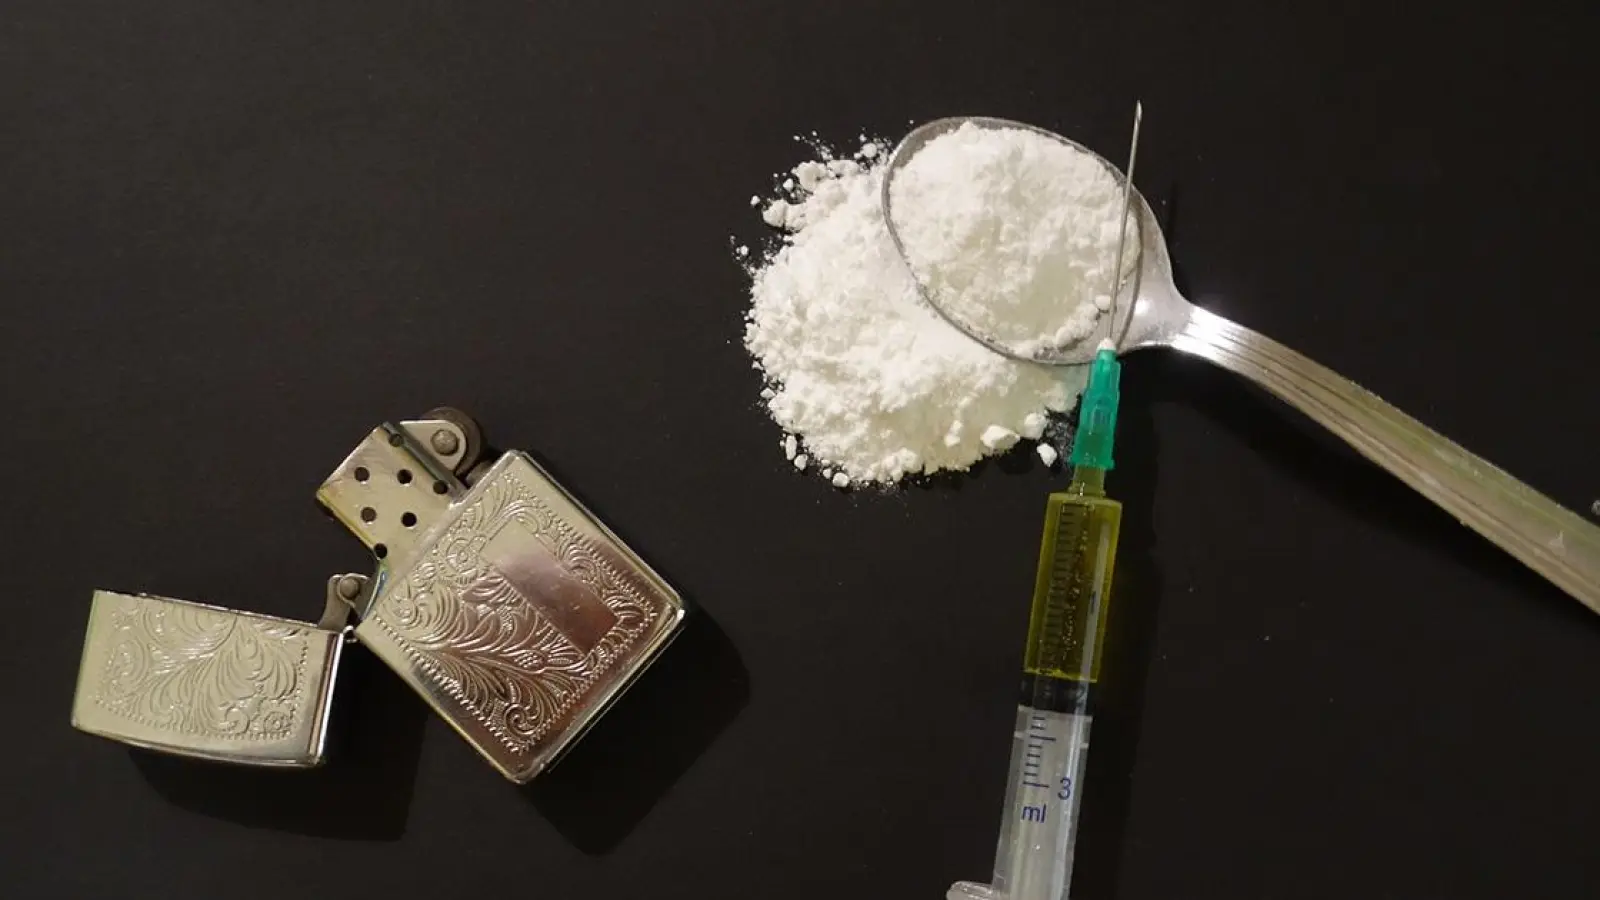 Zahlreiche Drogen und Waffen in Bayreuth gefunden (Foto: pixabay/RenoBeranger)